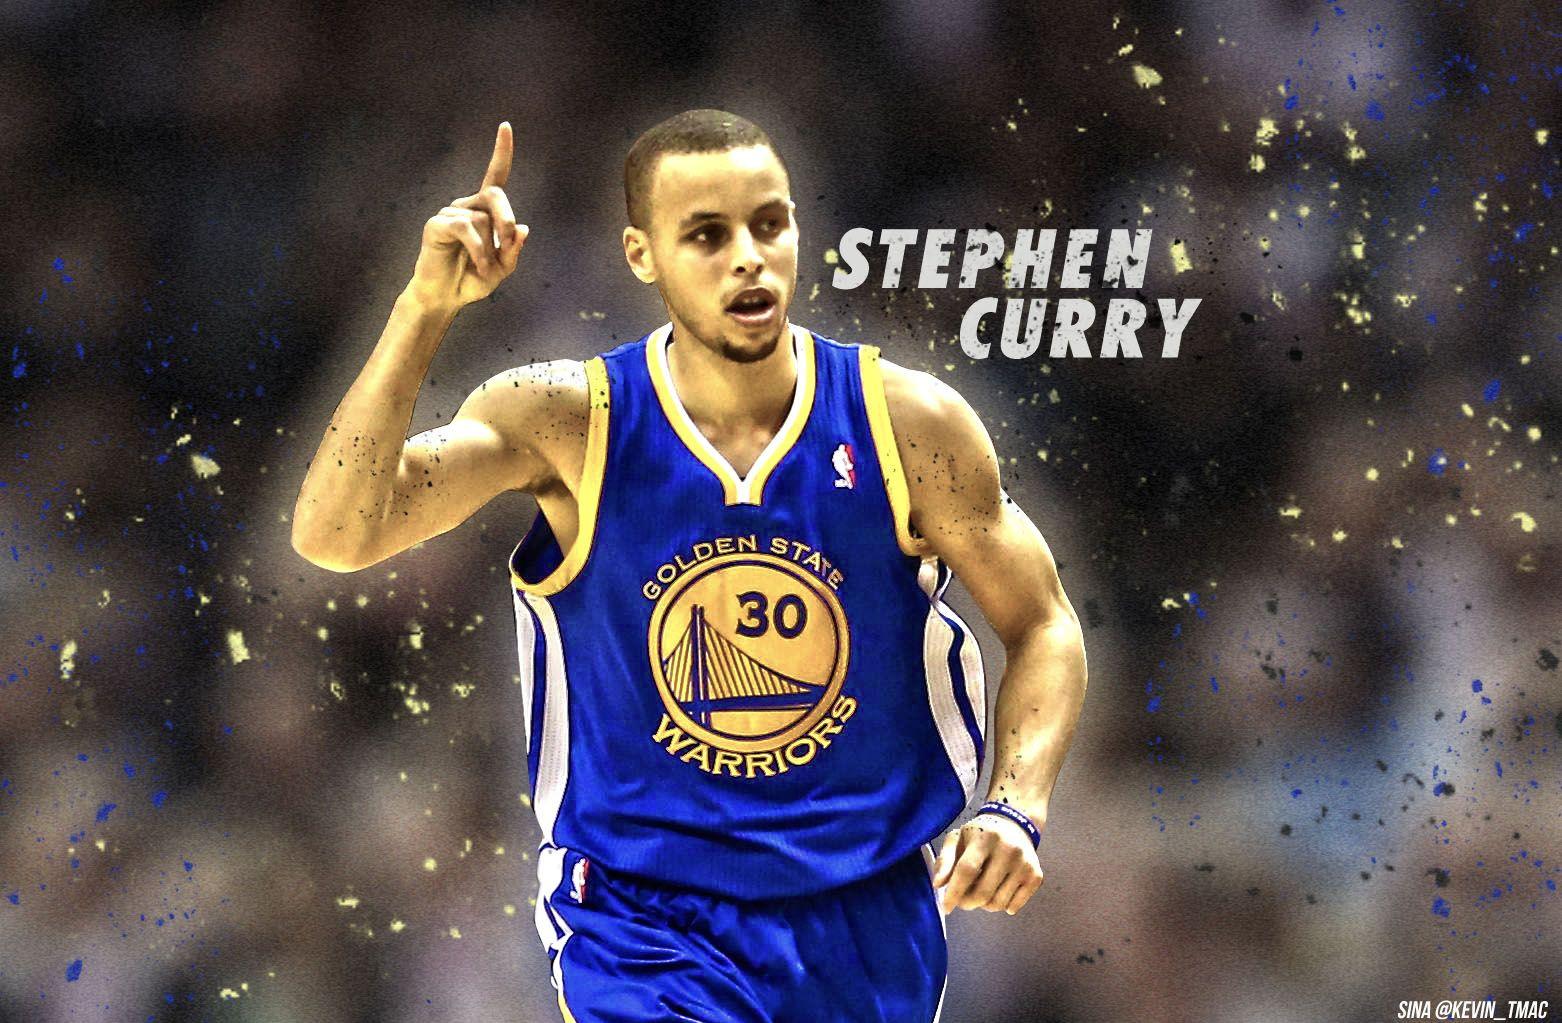 Stephen Curry Live Wallpaper Best HD Nba